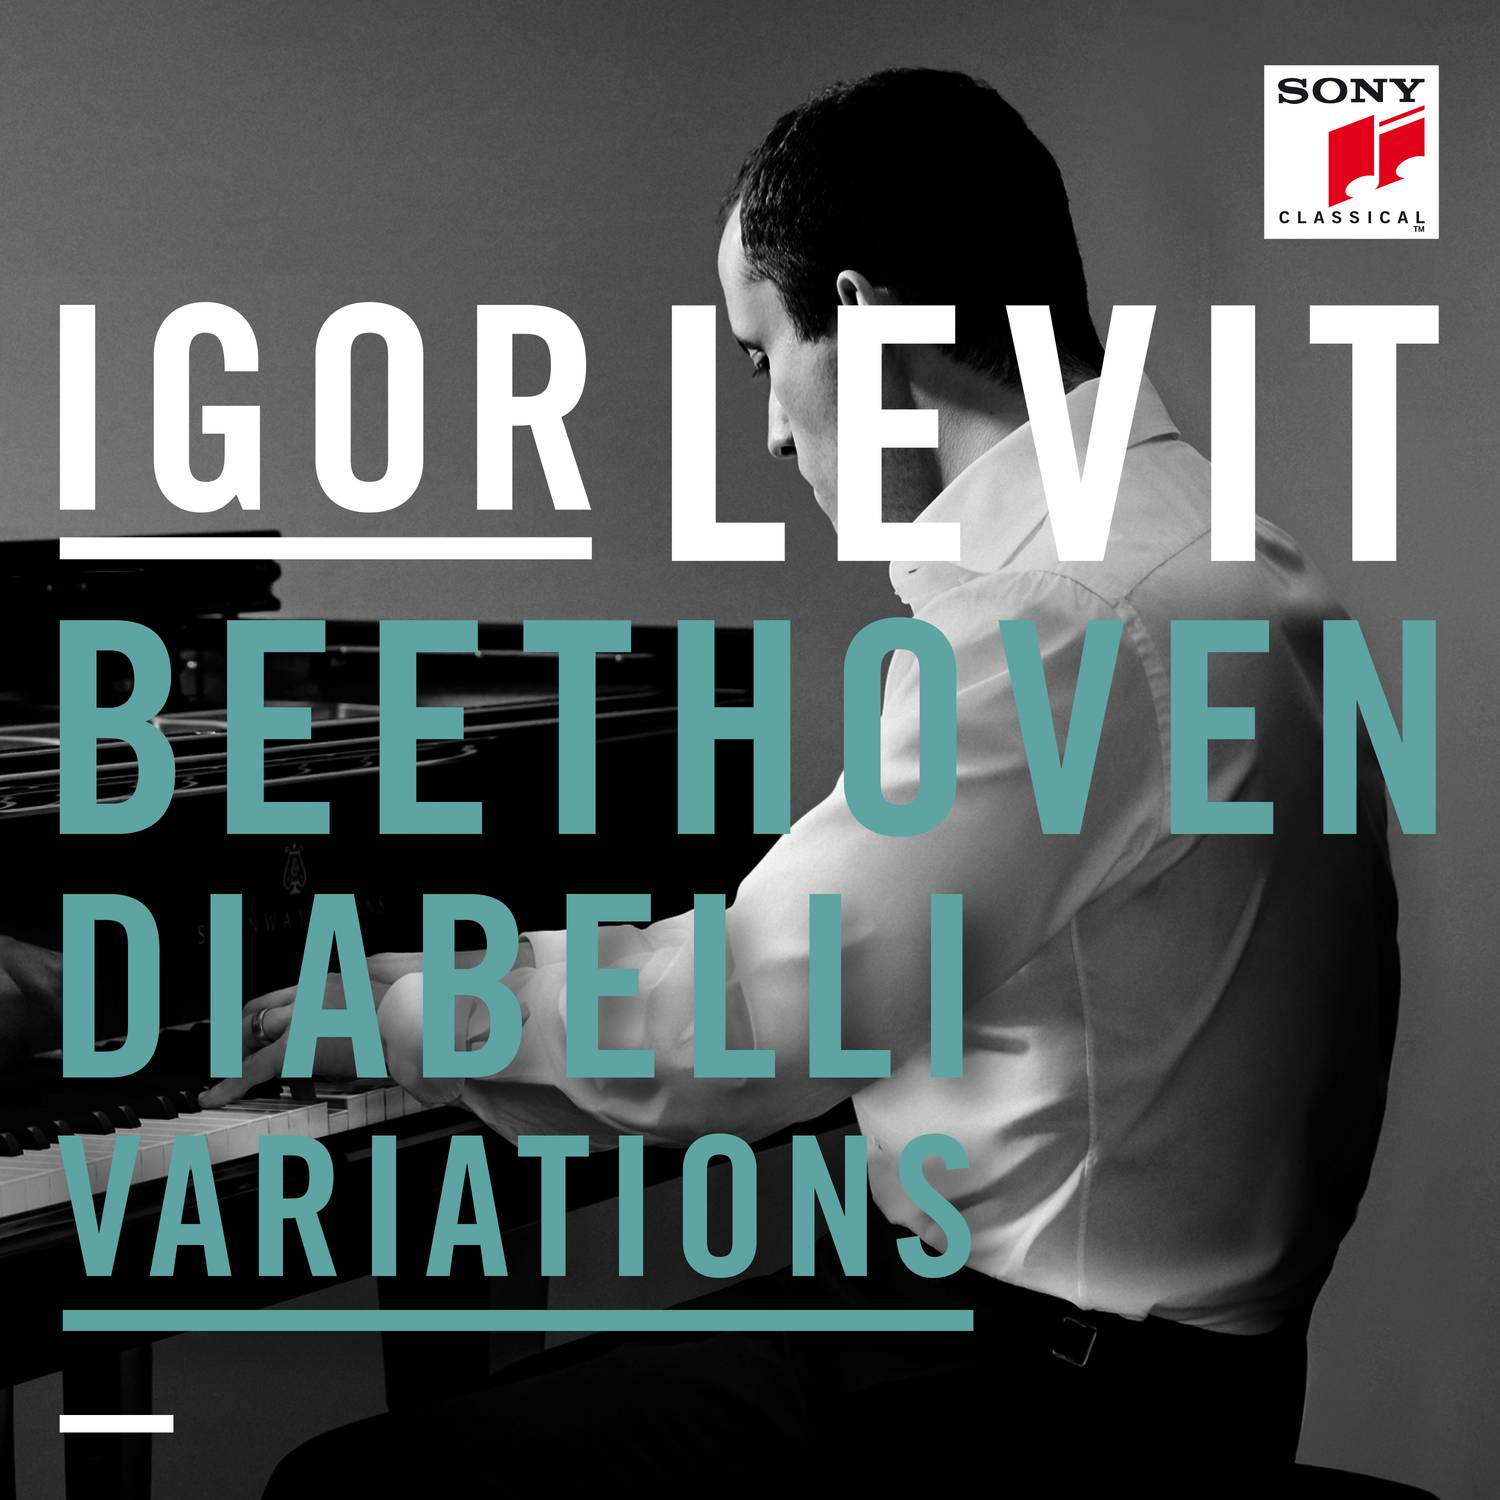 Diabelli Variations - 33 Variations on a Waltz by Anton Diabelli, Op. 120:Var. 27 - Vivace